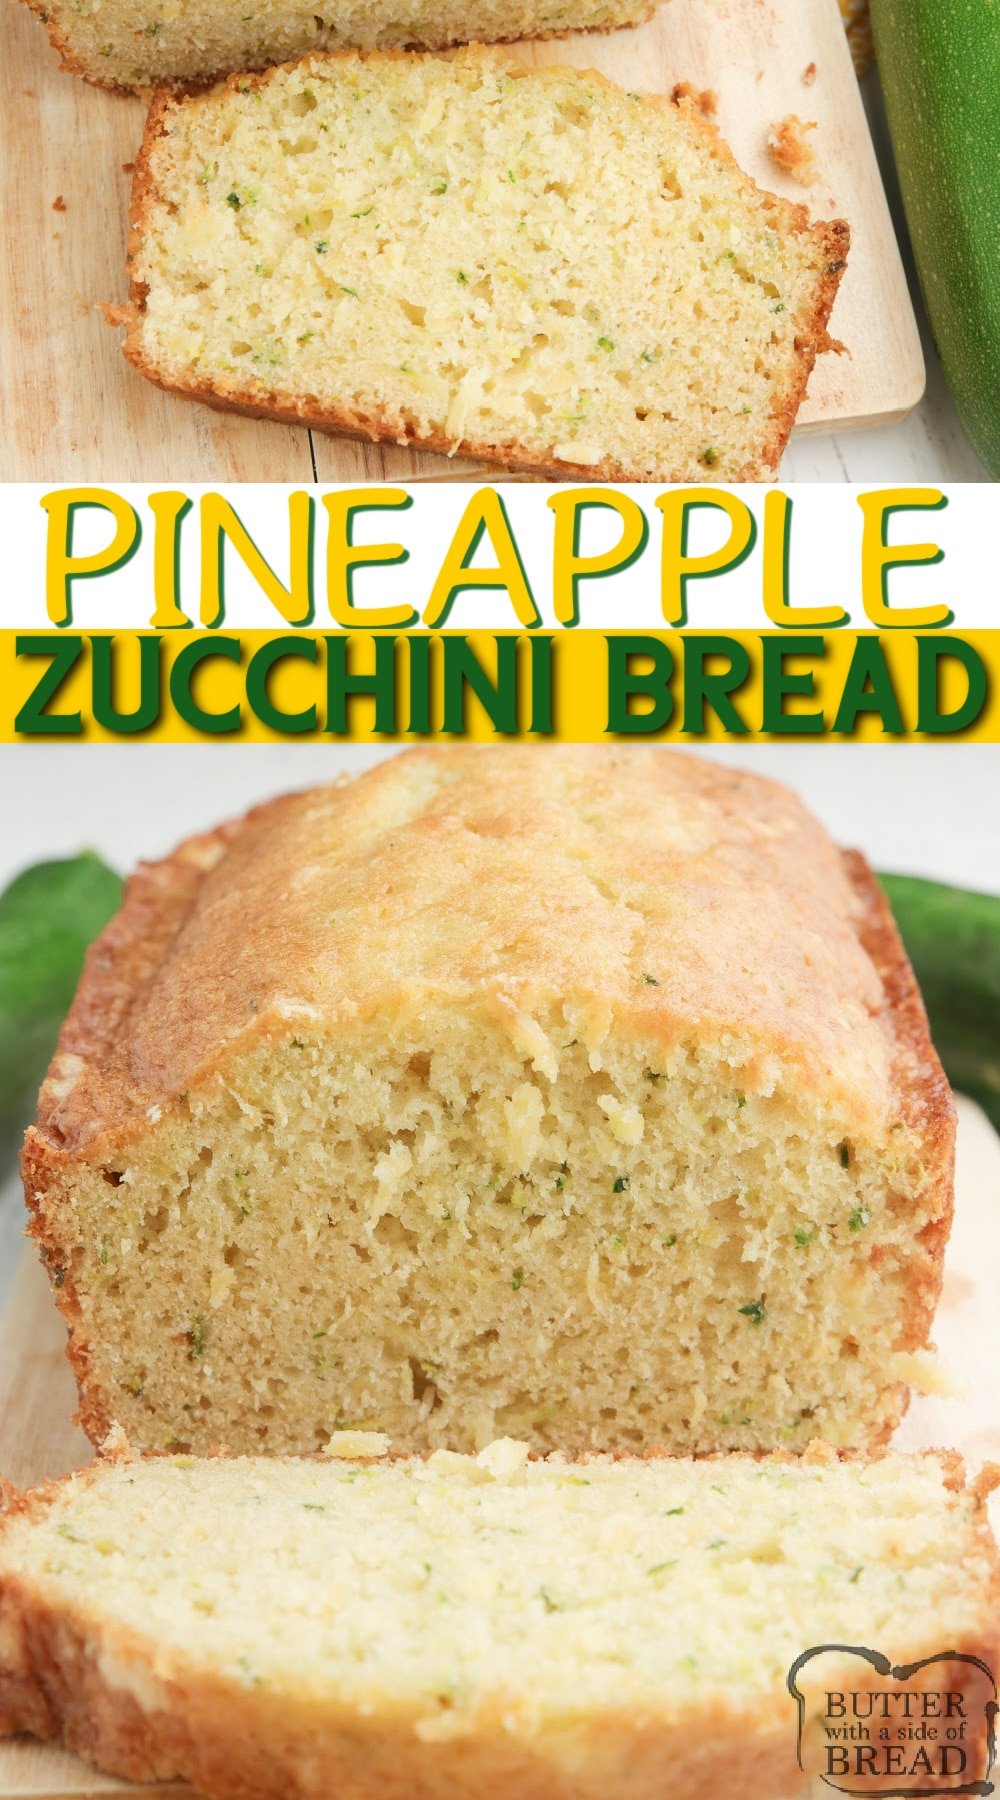 Pineapple Zucchini Bread combines a classic zucchini bread recipe with crushed pineapple, all in one delicious quick bread recipe!